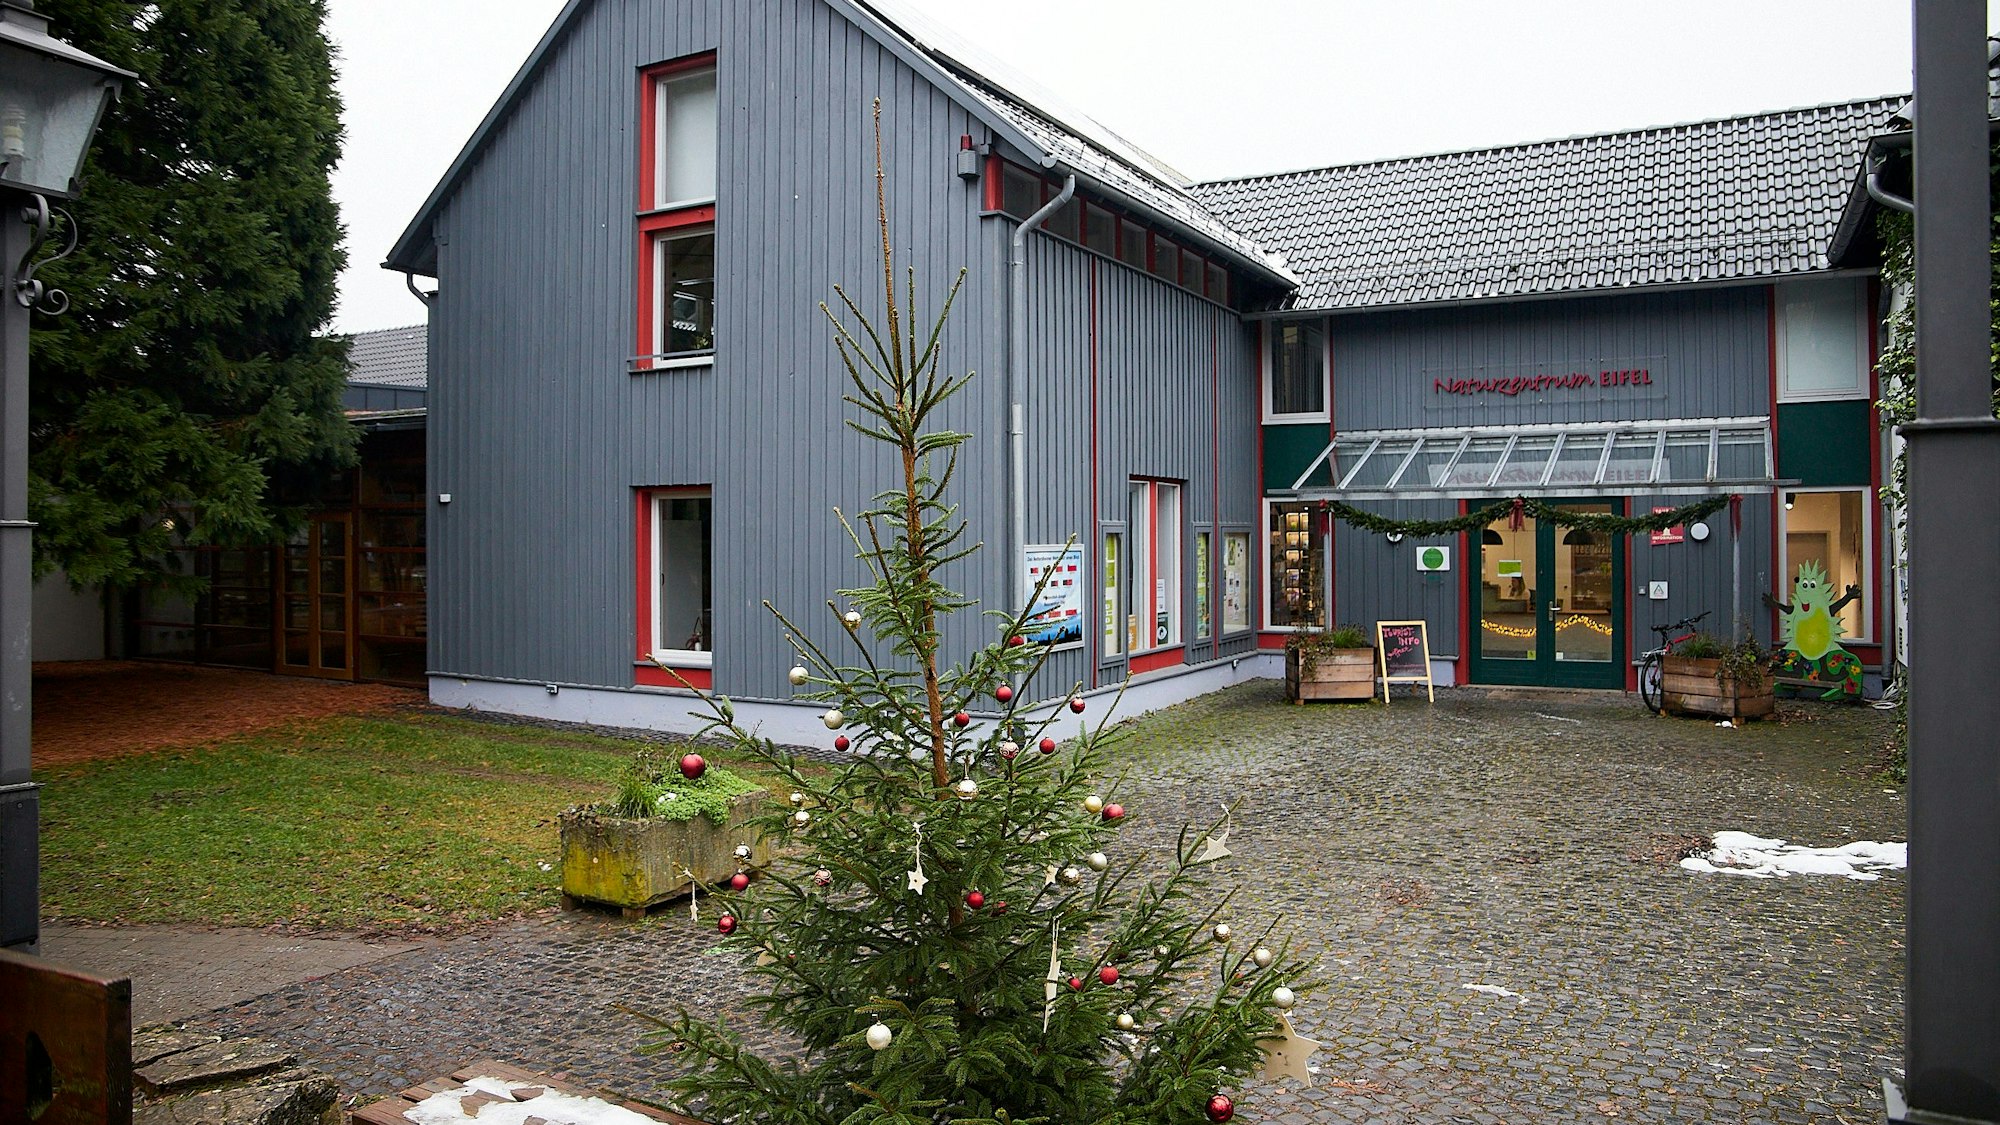 Das Naturzentrum in Nettersheim, vor dem ein Weihnachtsbaum steht, ist nach der Flut saniert worden und seit wenigen Wochen wieder geöffnet.